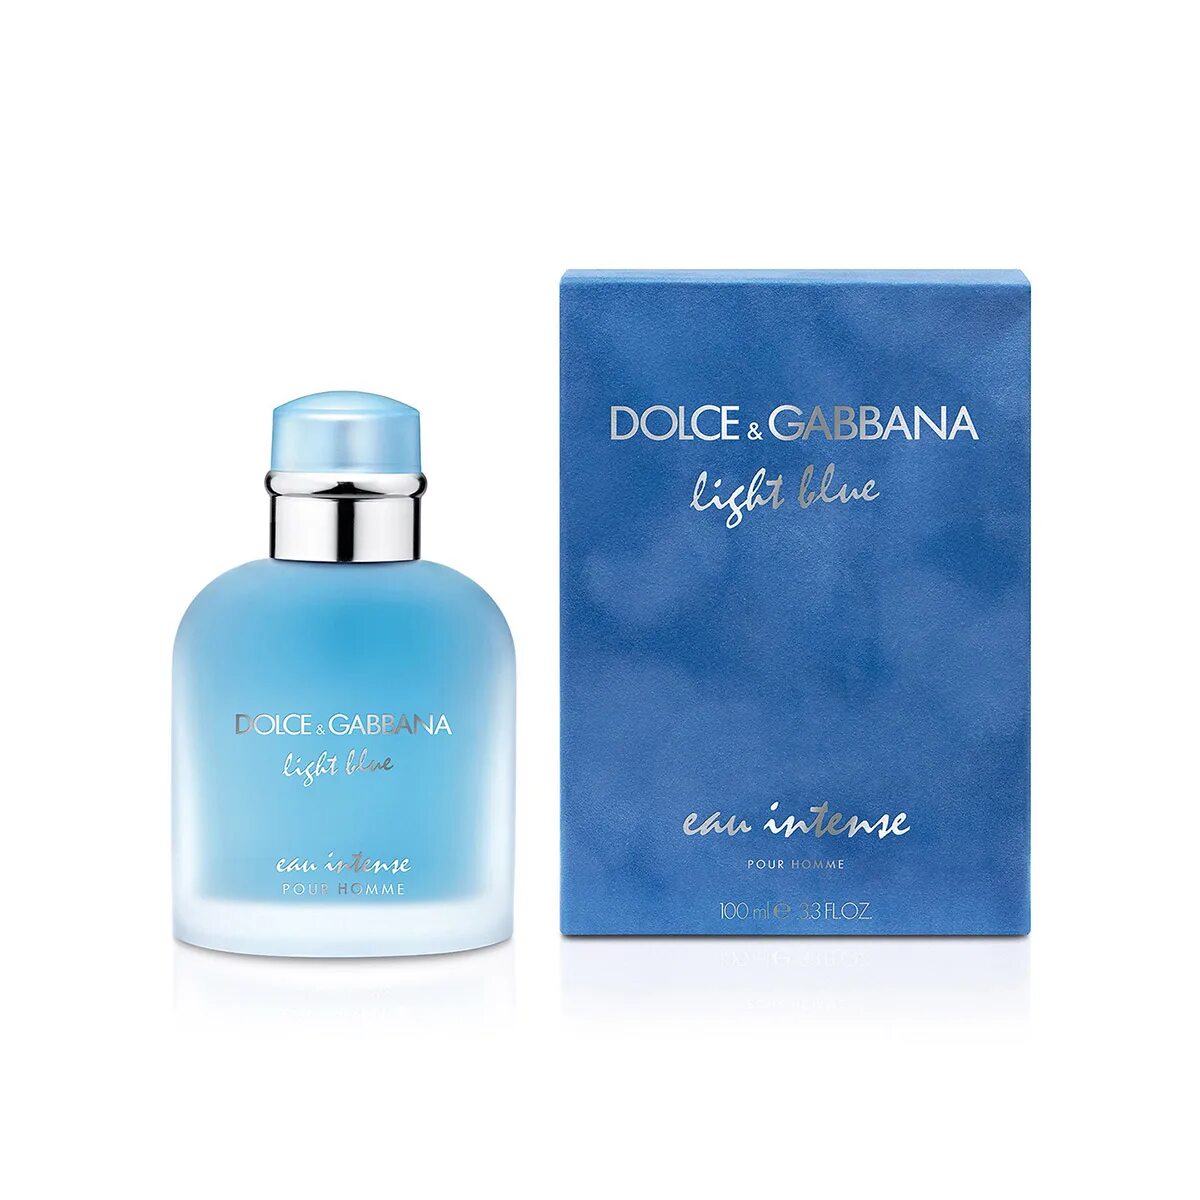 Dolce & Gabbana Light Blue Eau intense. Дольче Габбана Лайт Блю.comинтенс. Духи Dolce Gabbana Light Blue мужские. Дольче Габбана Лайт Блю 50 мл.